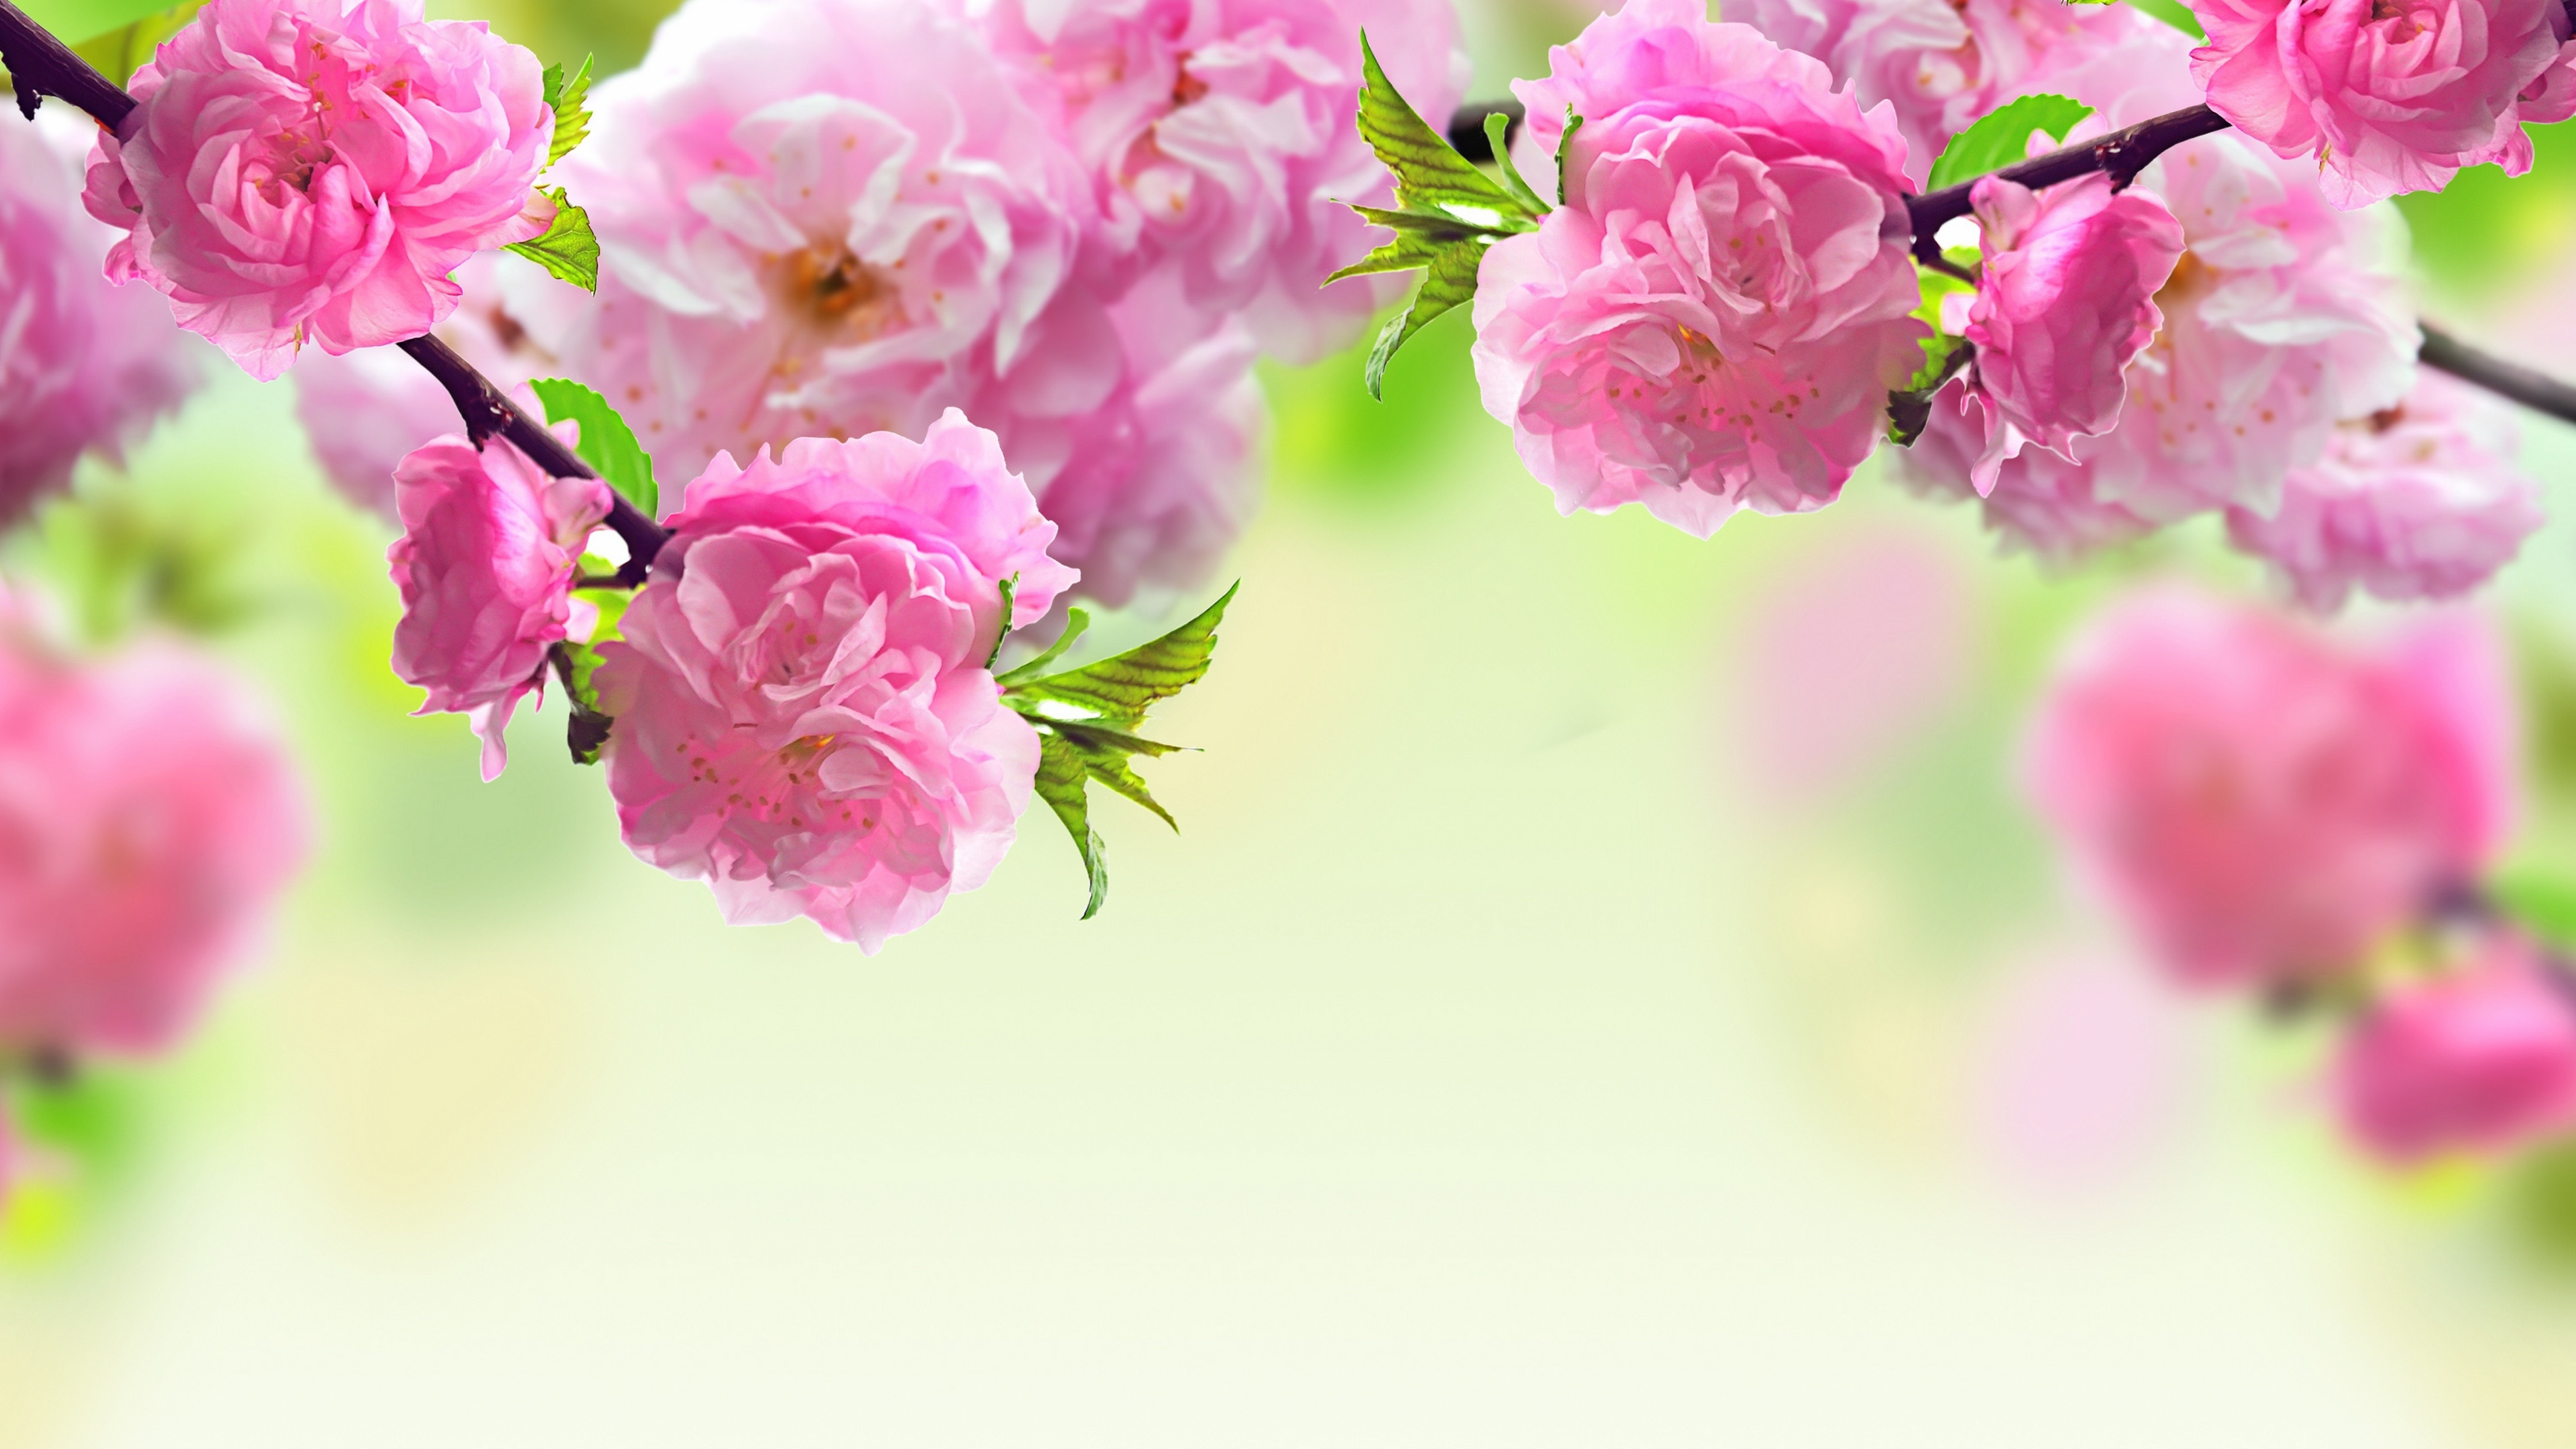 弹簧, 粉红色, 开花, 显花植物, 手持设备 壁纸 3840x2160 允许